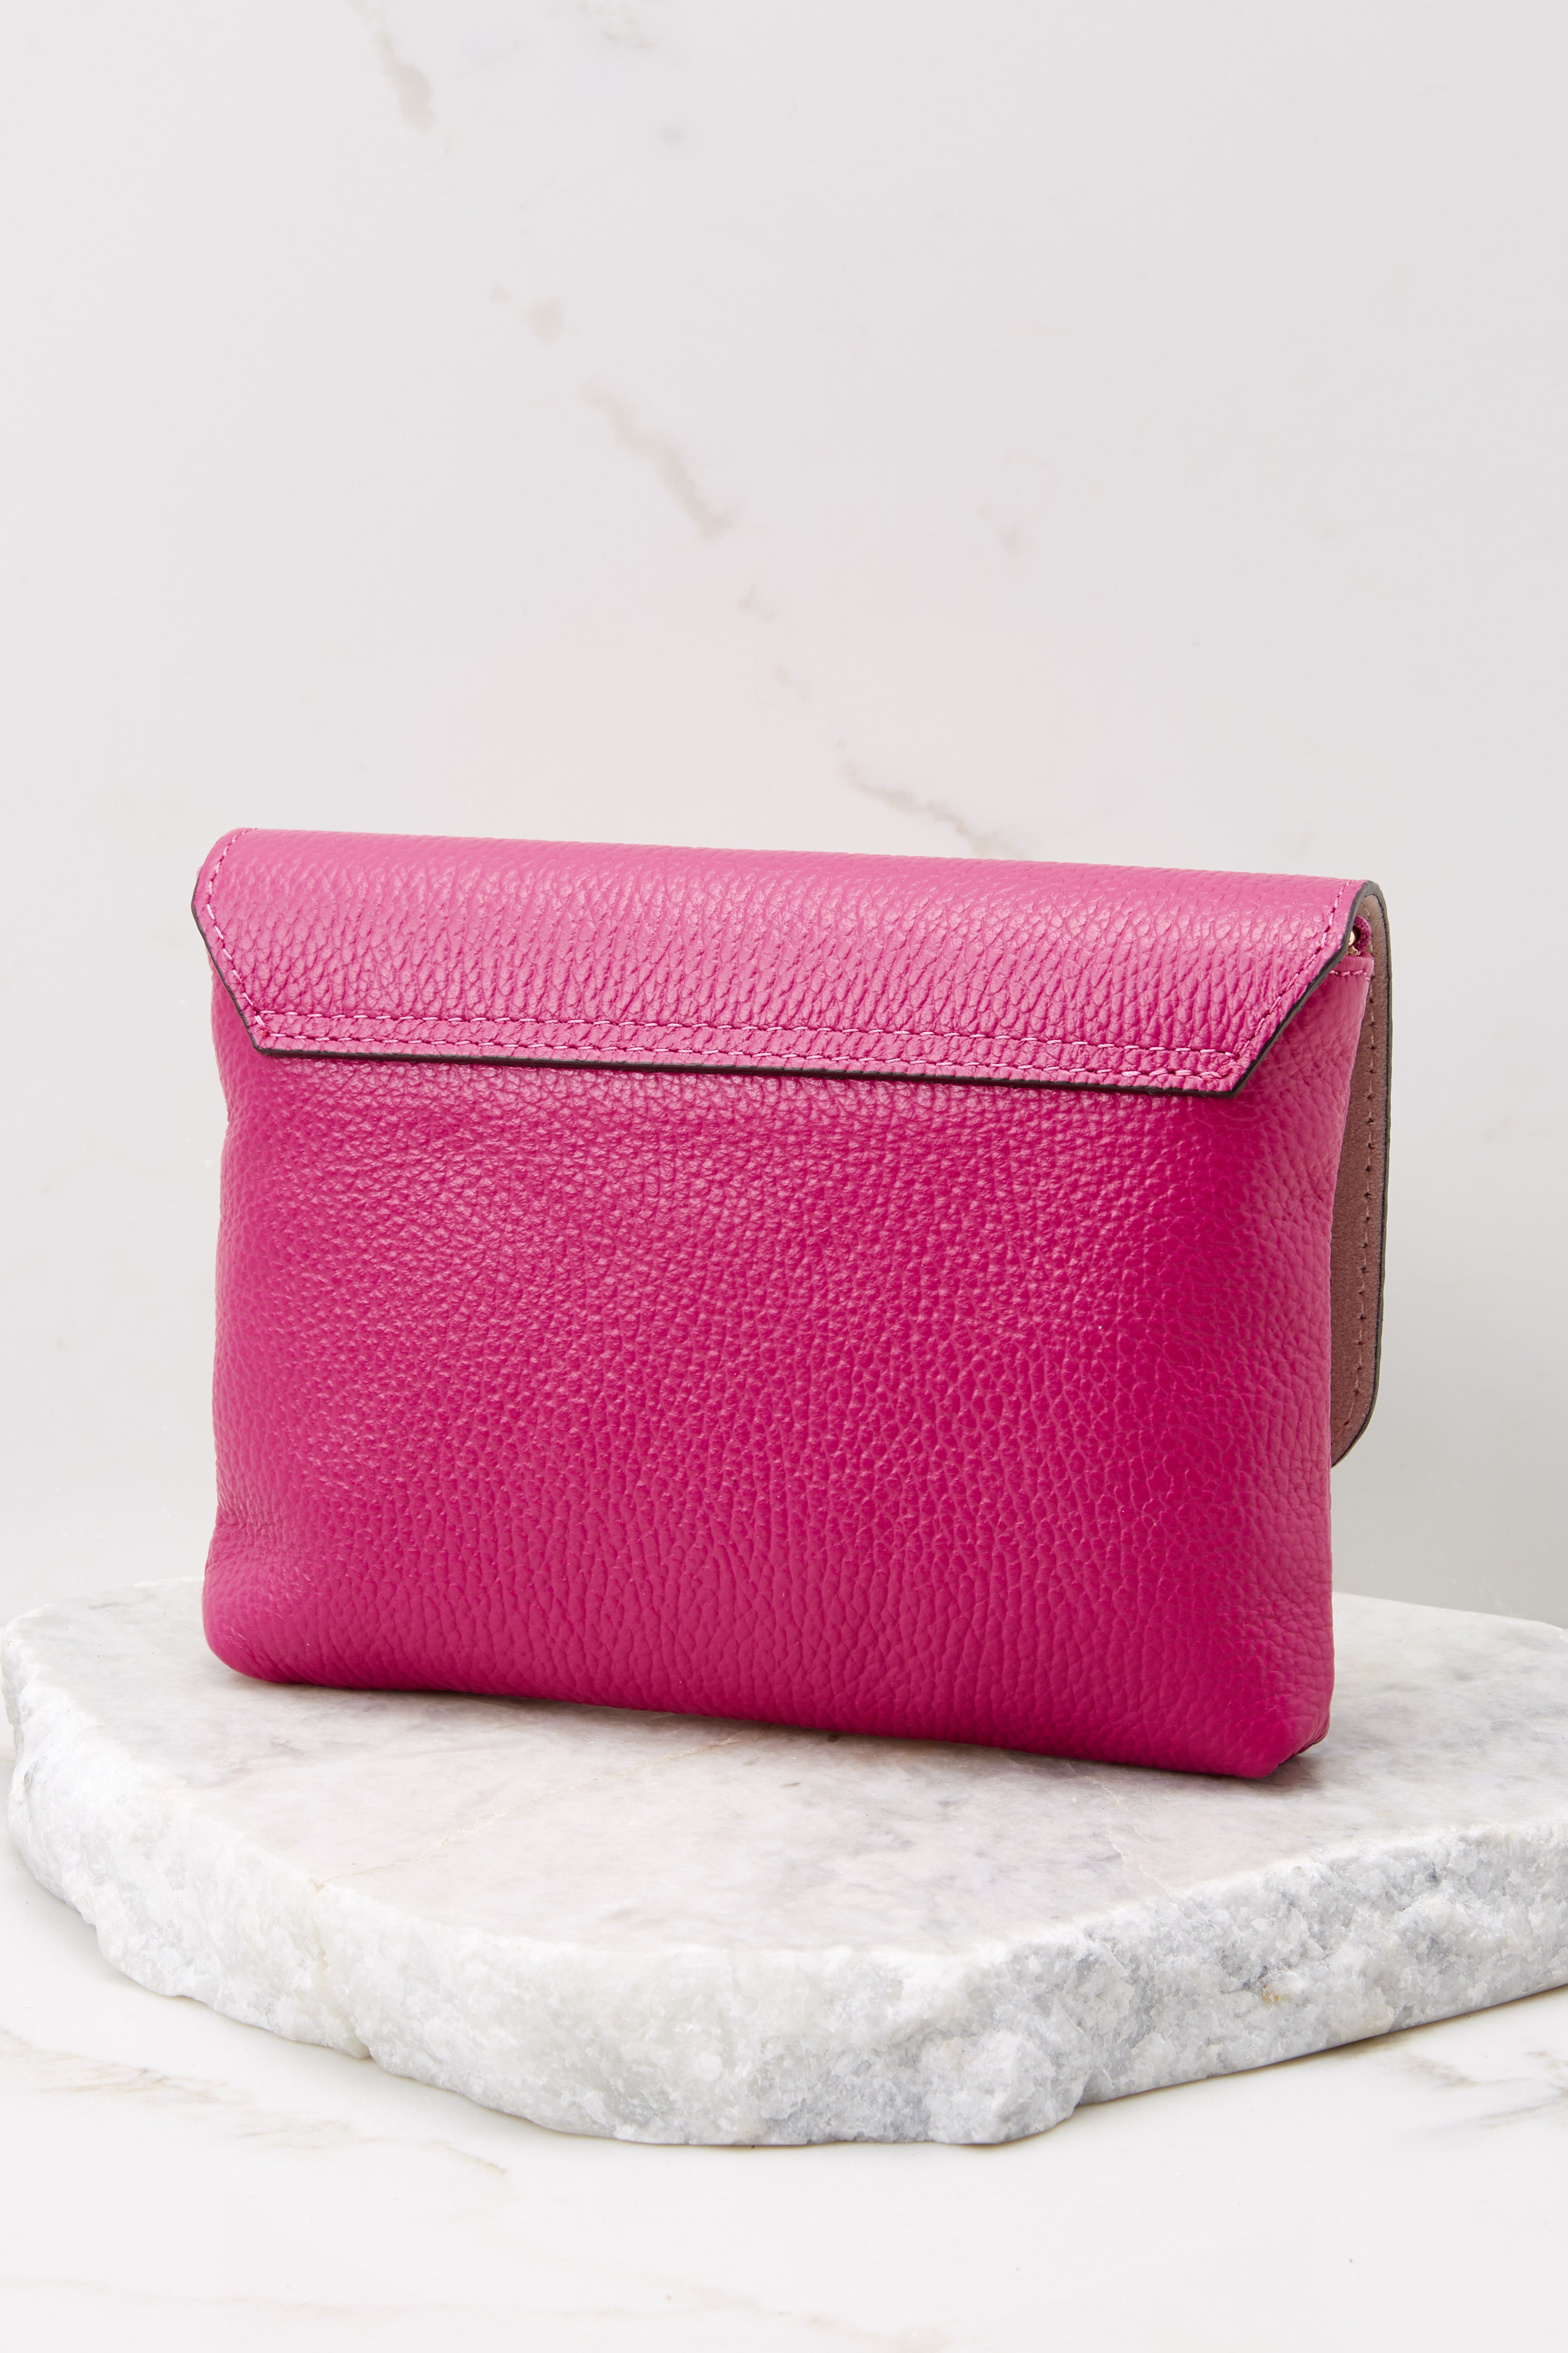 7 Work Smarter Hot Pink Leather Bag at reddress.com